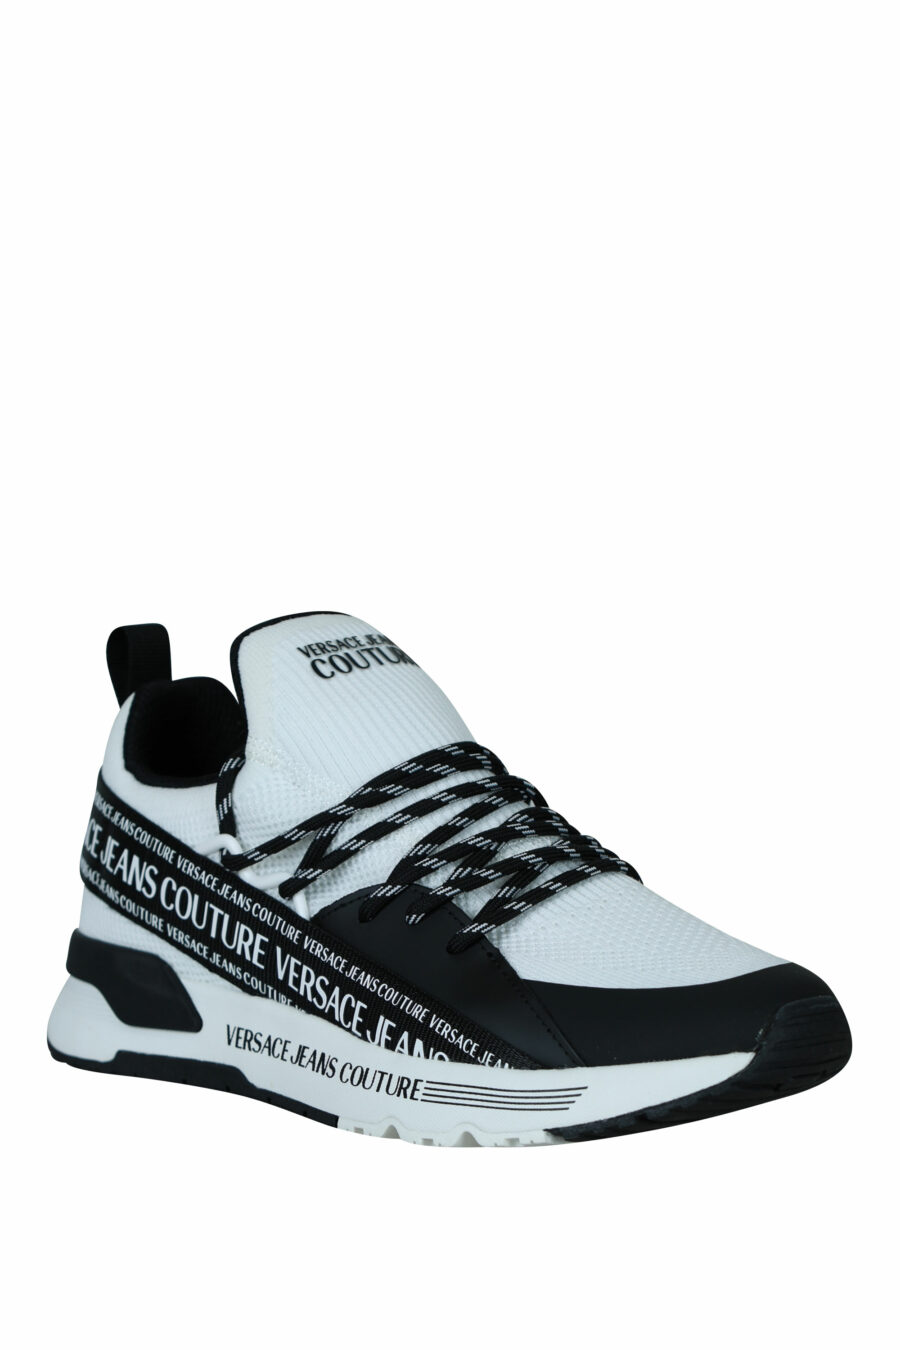 Zapatillas blancas "dynamic" con minilogo en cinta y cordones bicolor - 8052019605945 1 1